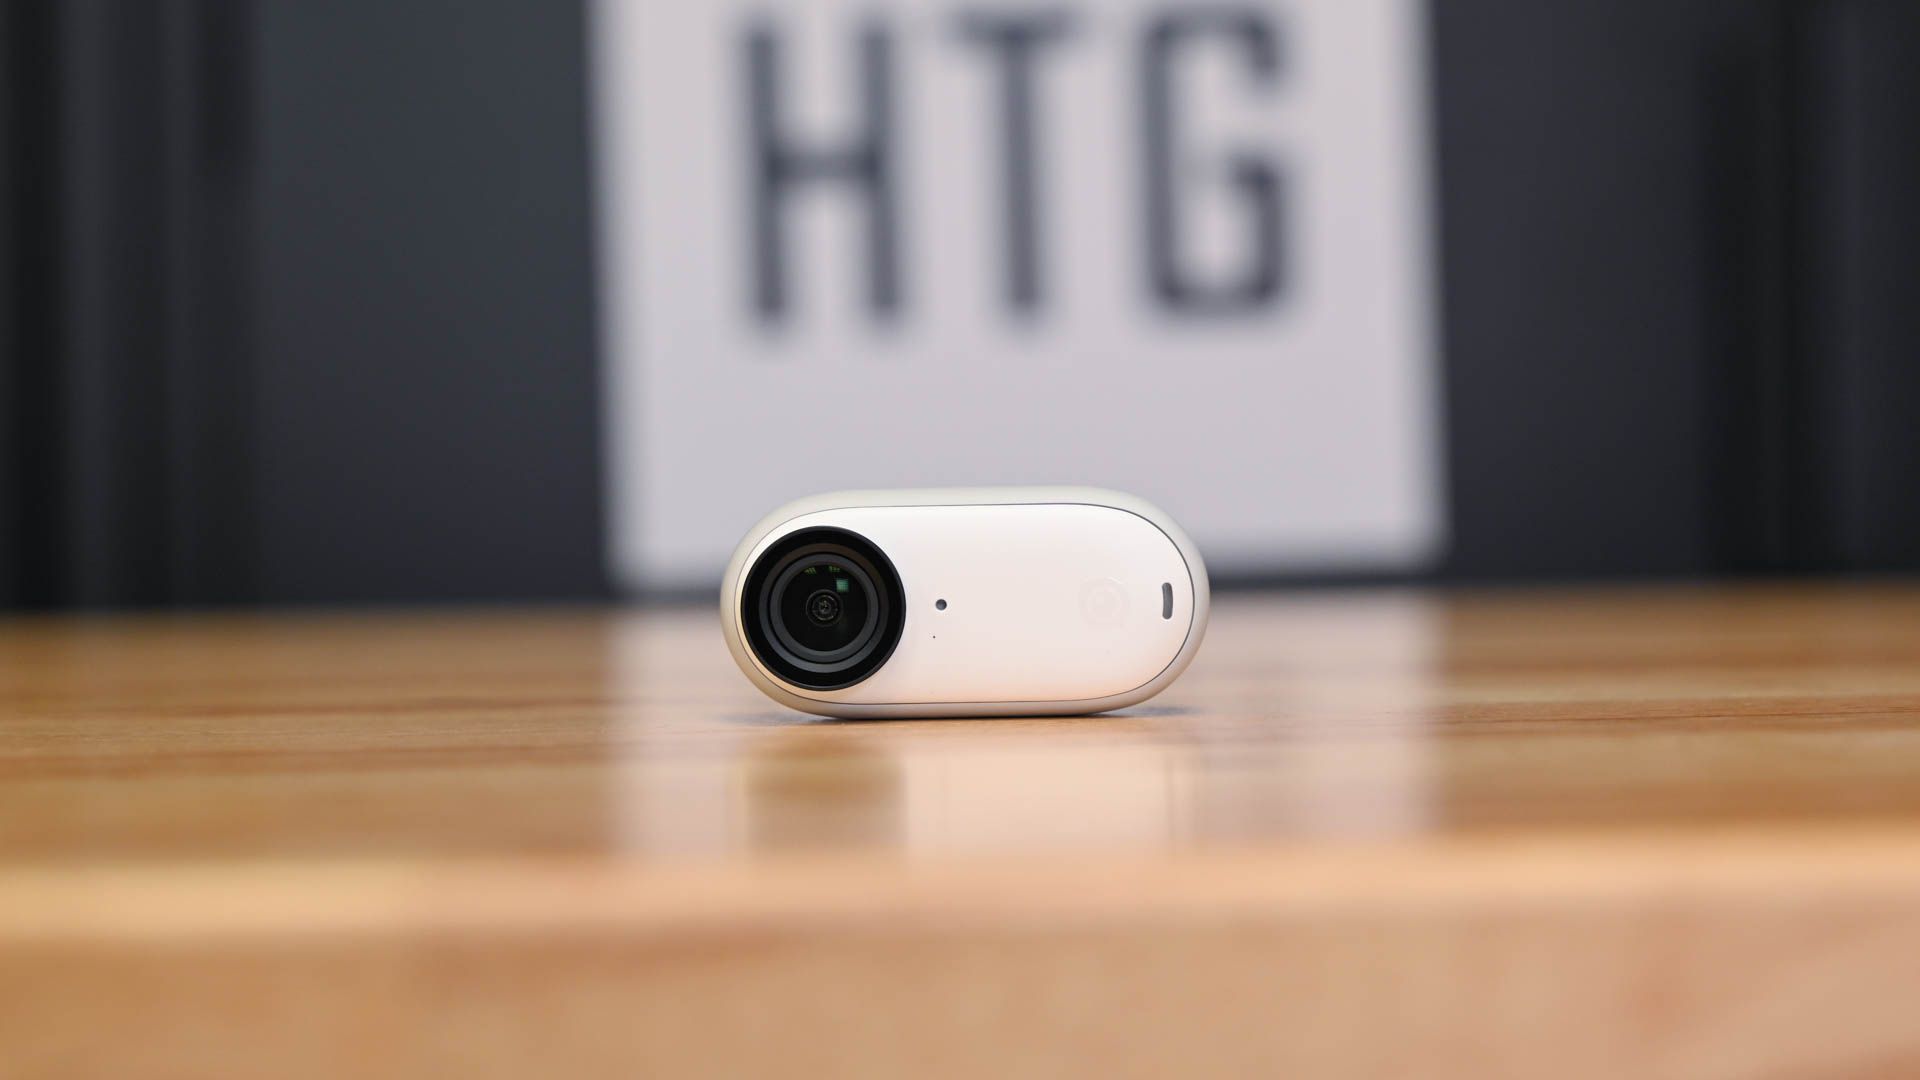 Insta360 Go 3 Camera Review: Go-Anywhere Tiny Cam